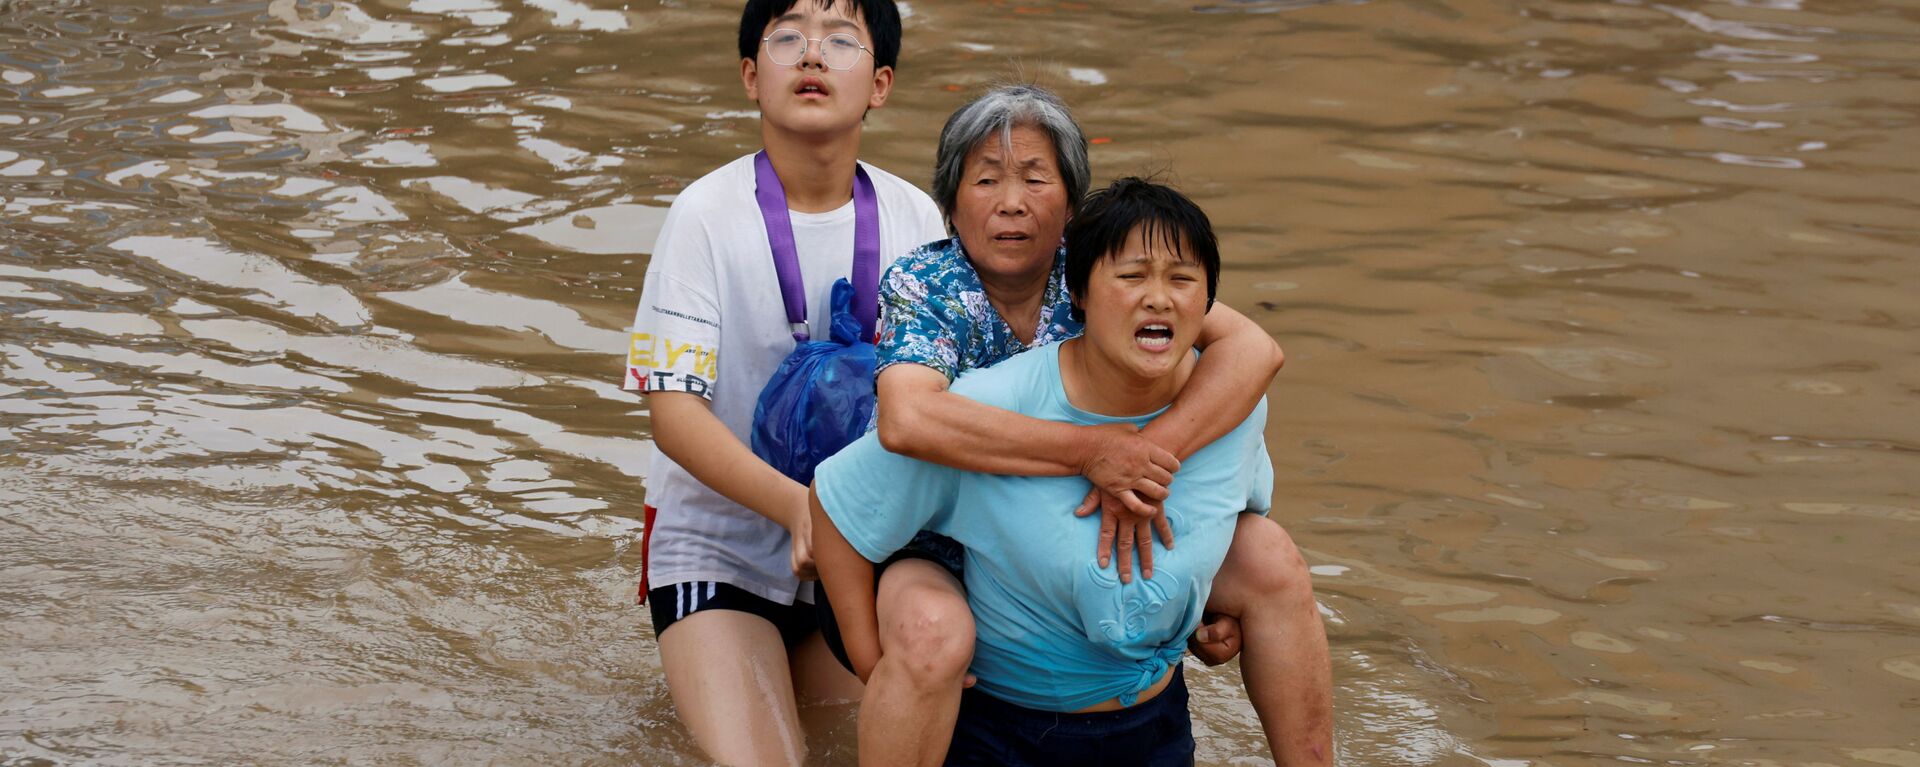 Женщина несет пожилую женщину  через паводковые воды после проливного дождя в Чжэнчжоу, провинция Хэнань, Китай - Sputnik Mundo, 1920, 26.07.2021